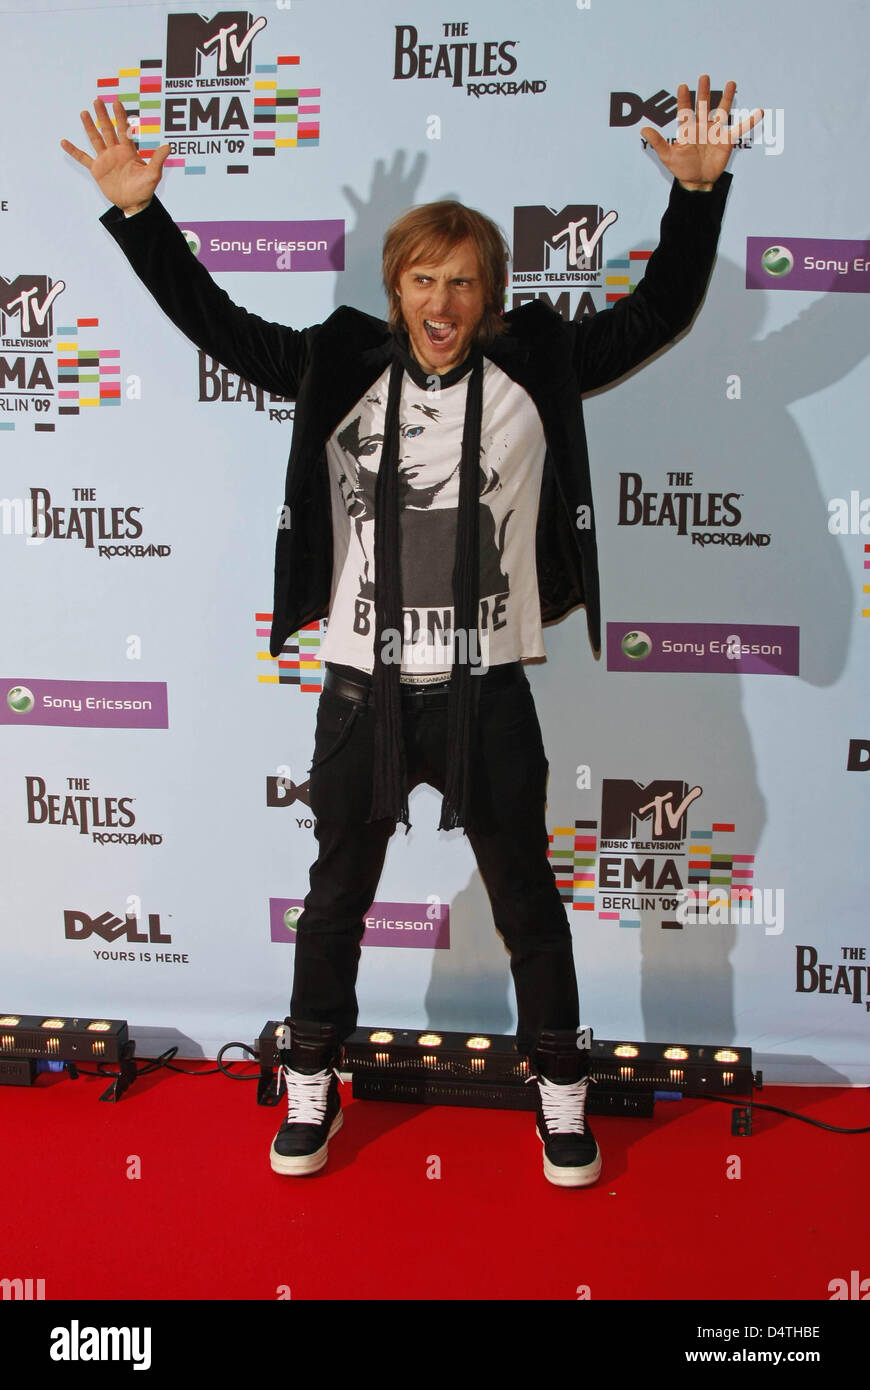 DJ français David Guetta pose dans la salle de presse au MTV Europe Music Awards à O2 World à Berlin, Allemagne, 05 novembre 2009. MTV a choisi Berlin pour la cérémonie comme l'année 2009 marque le 20e anniversaire de la chute du Mur de Berlin. Photo : Hubert Boesl Banque D'Images